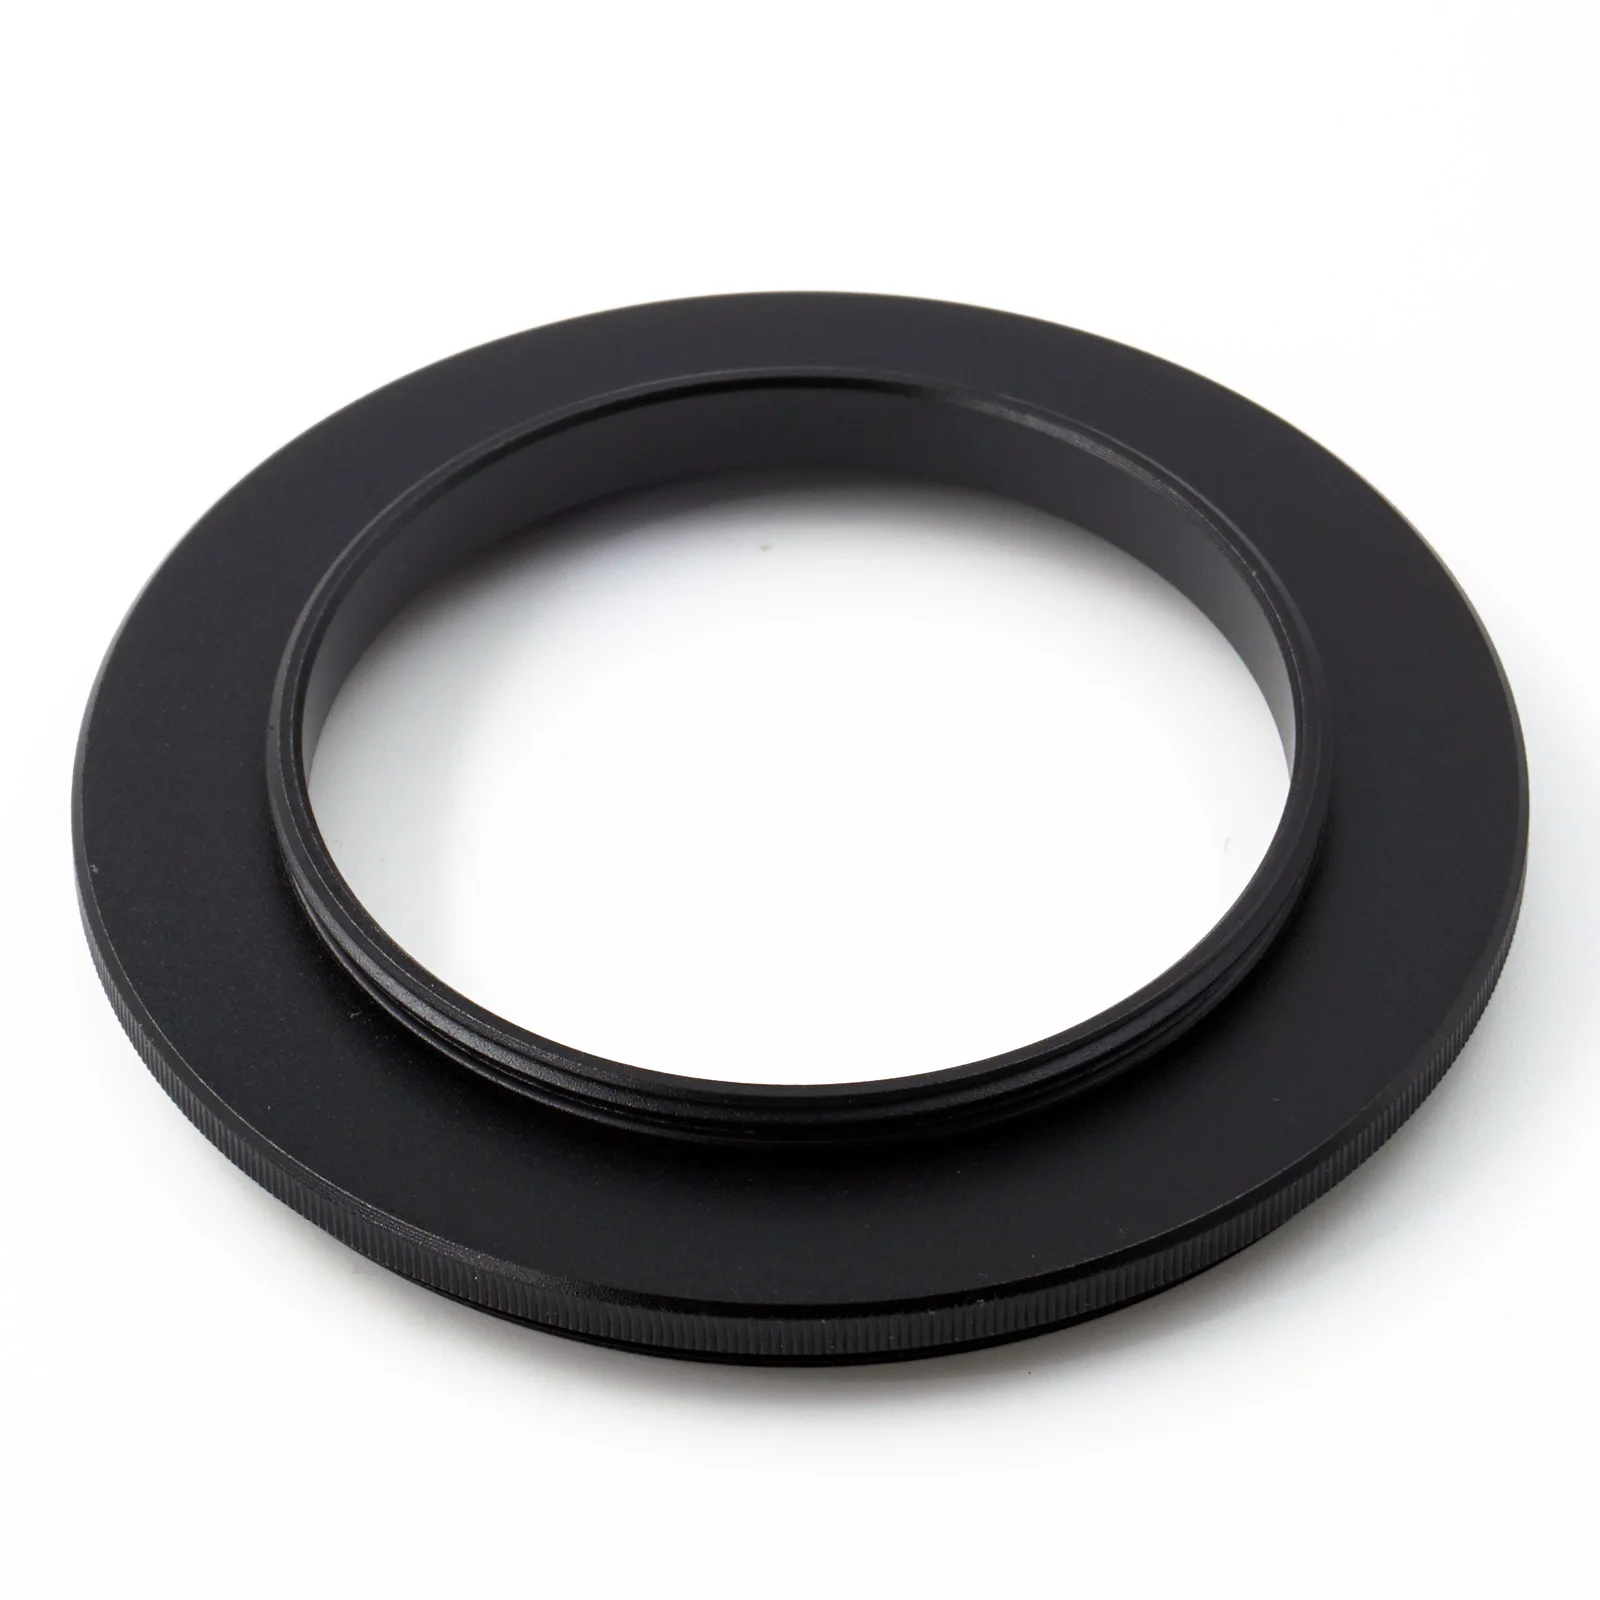 

Переходное кольцо для объектива с двойной наружной резьбой 42-55 штекер-штекер 42 мм x1 - 55 мм x0.75